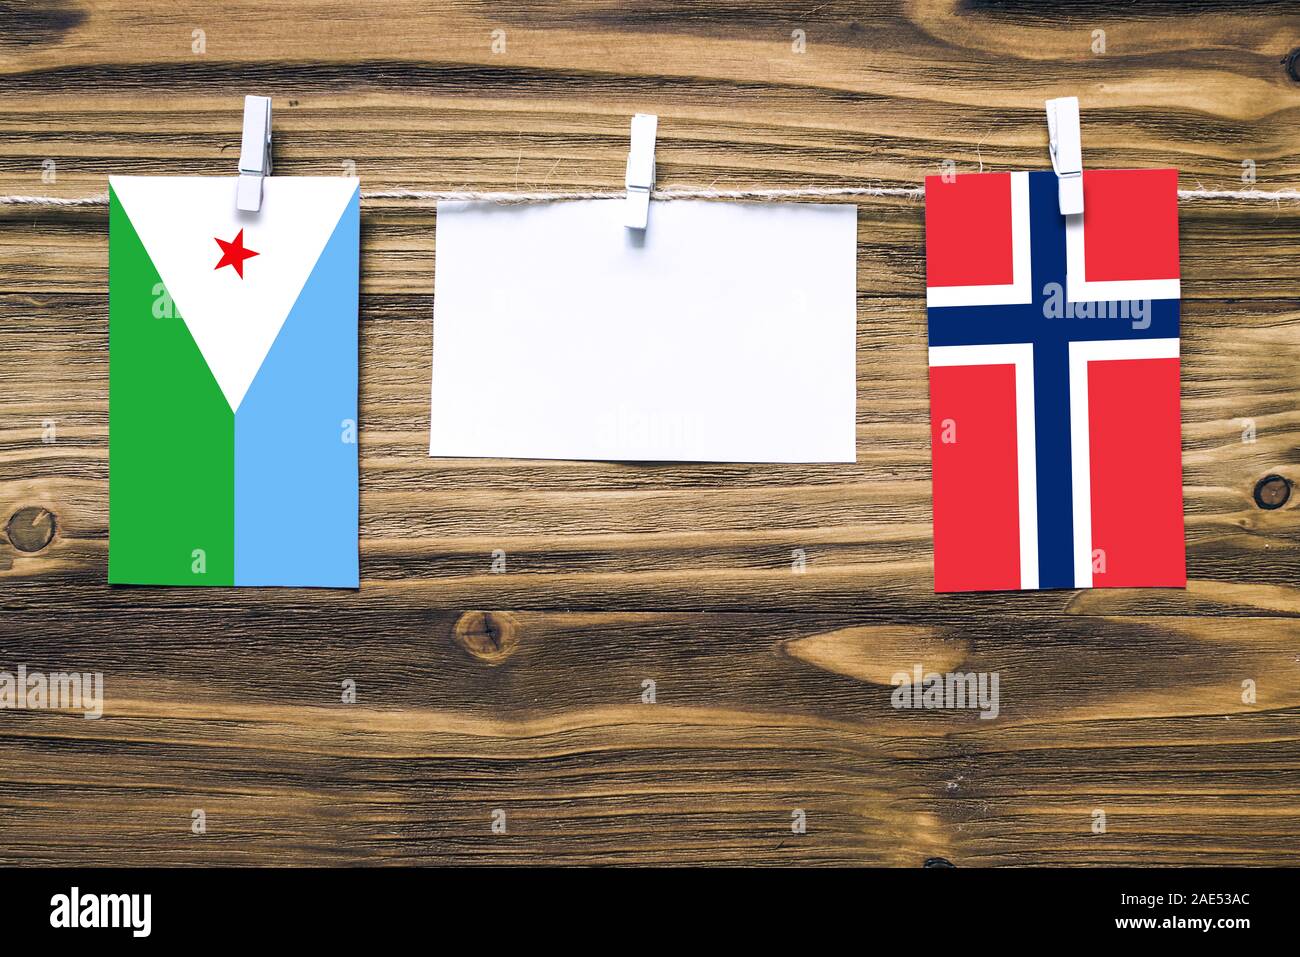 Hängenden Flaggen von Dschibuti und Norwegen zum Seil mit Kleidung Pins mit  Kopie Raum befestigt auf weißem Papier auf Holz- Hintergrund. Diplomatische  Beziehungen Stockfotografie - Alamy